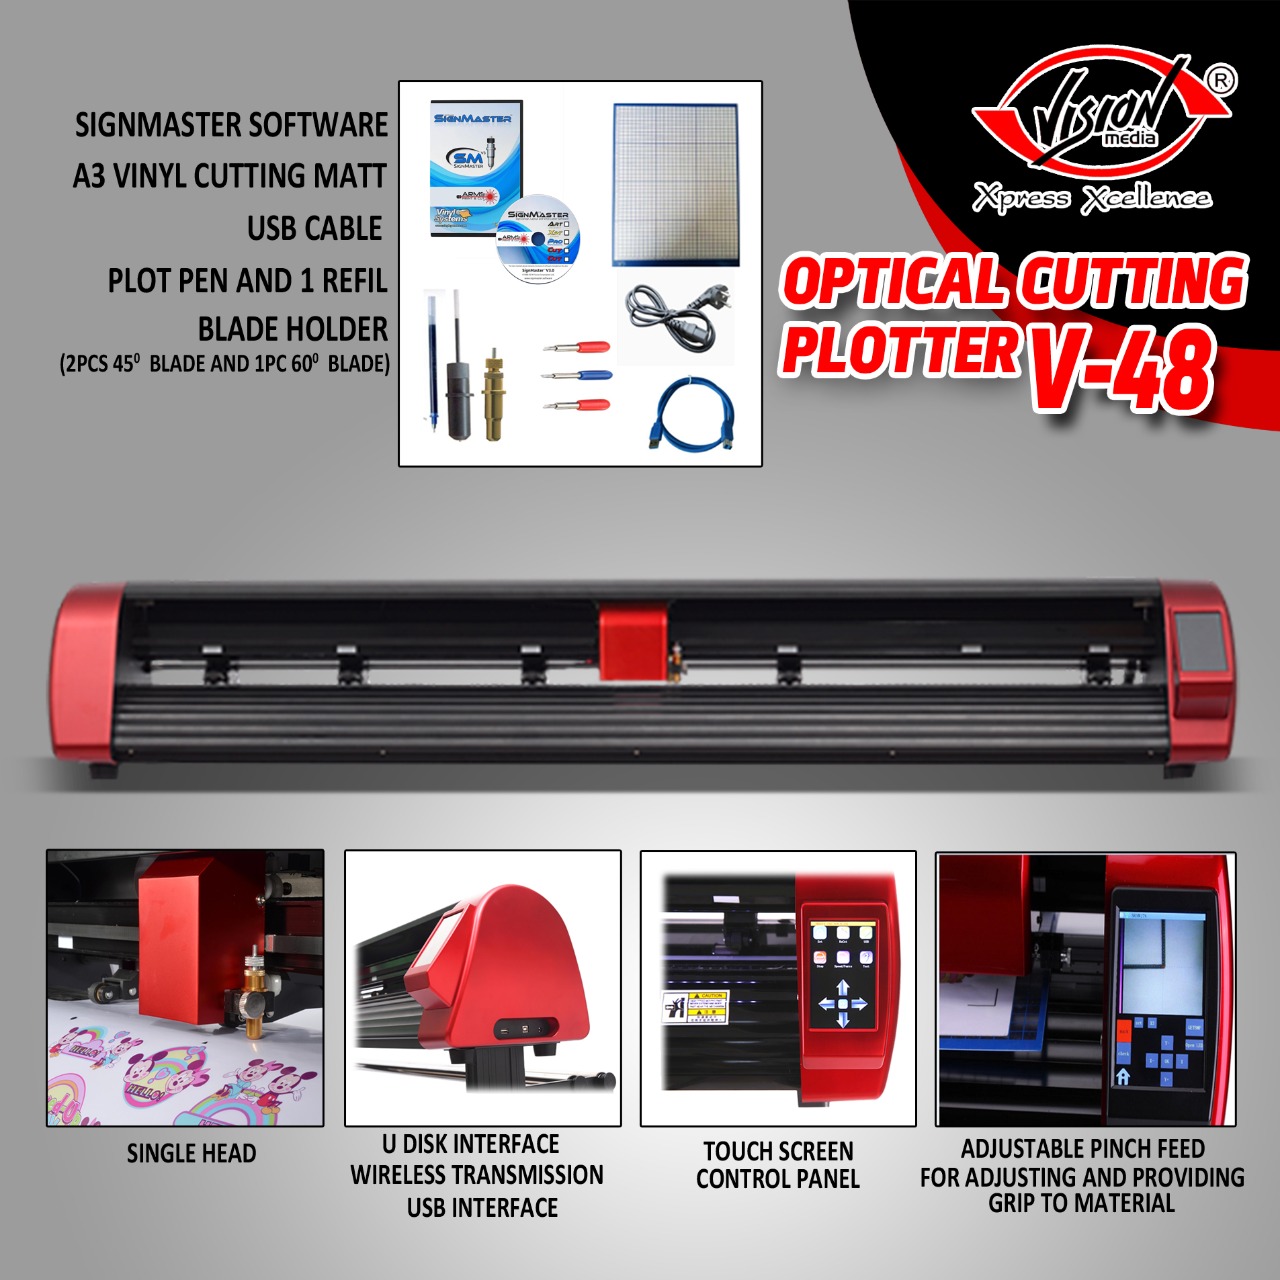 Buy Optical Cutting Plotter V-48 Online